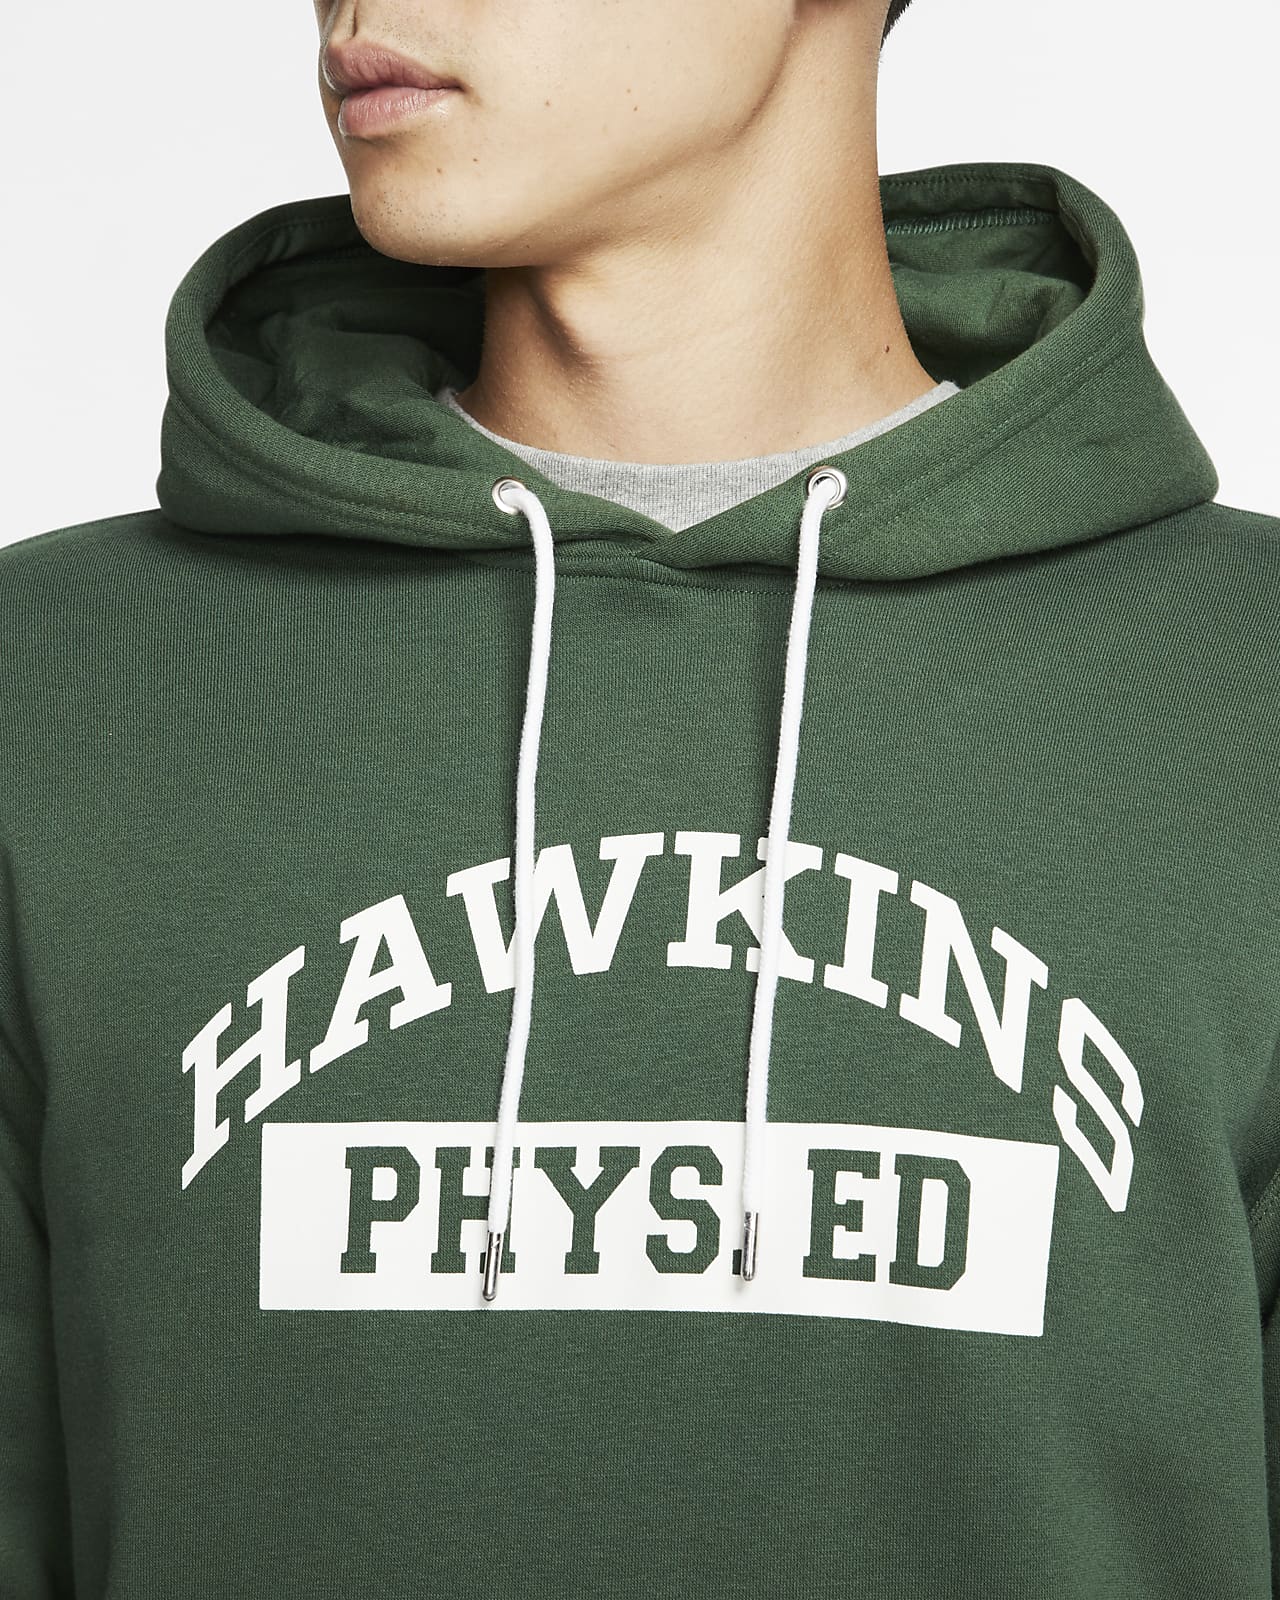 hawkins phys ed sweatshirt nike